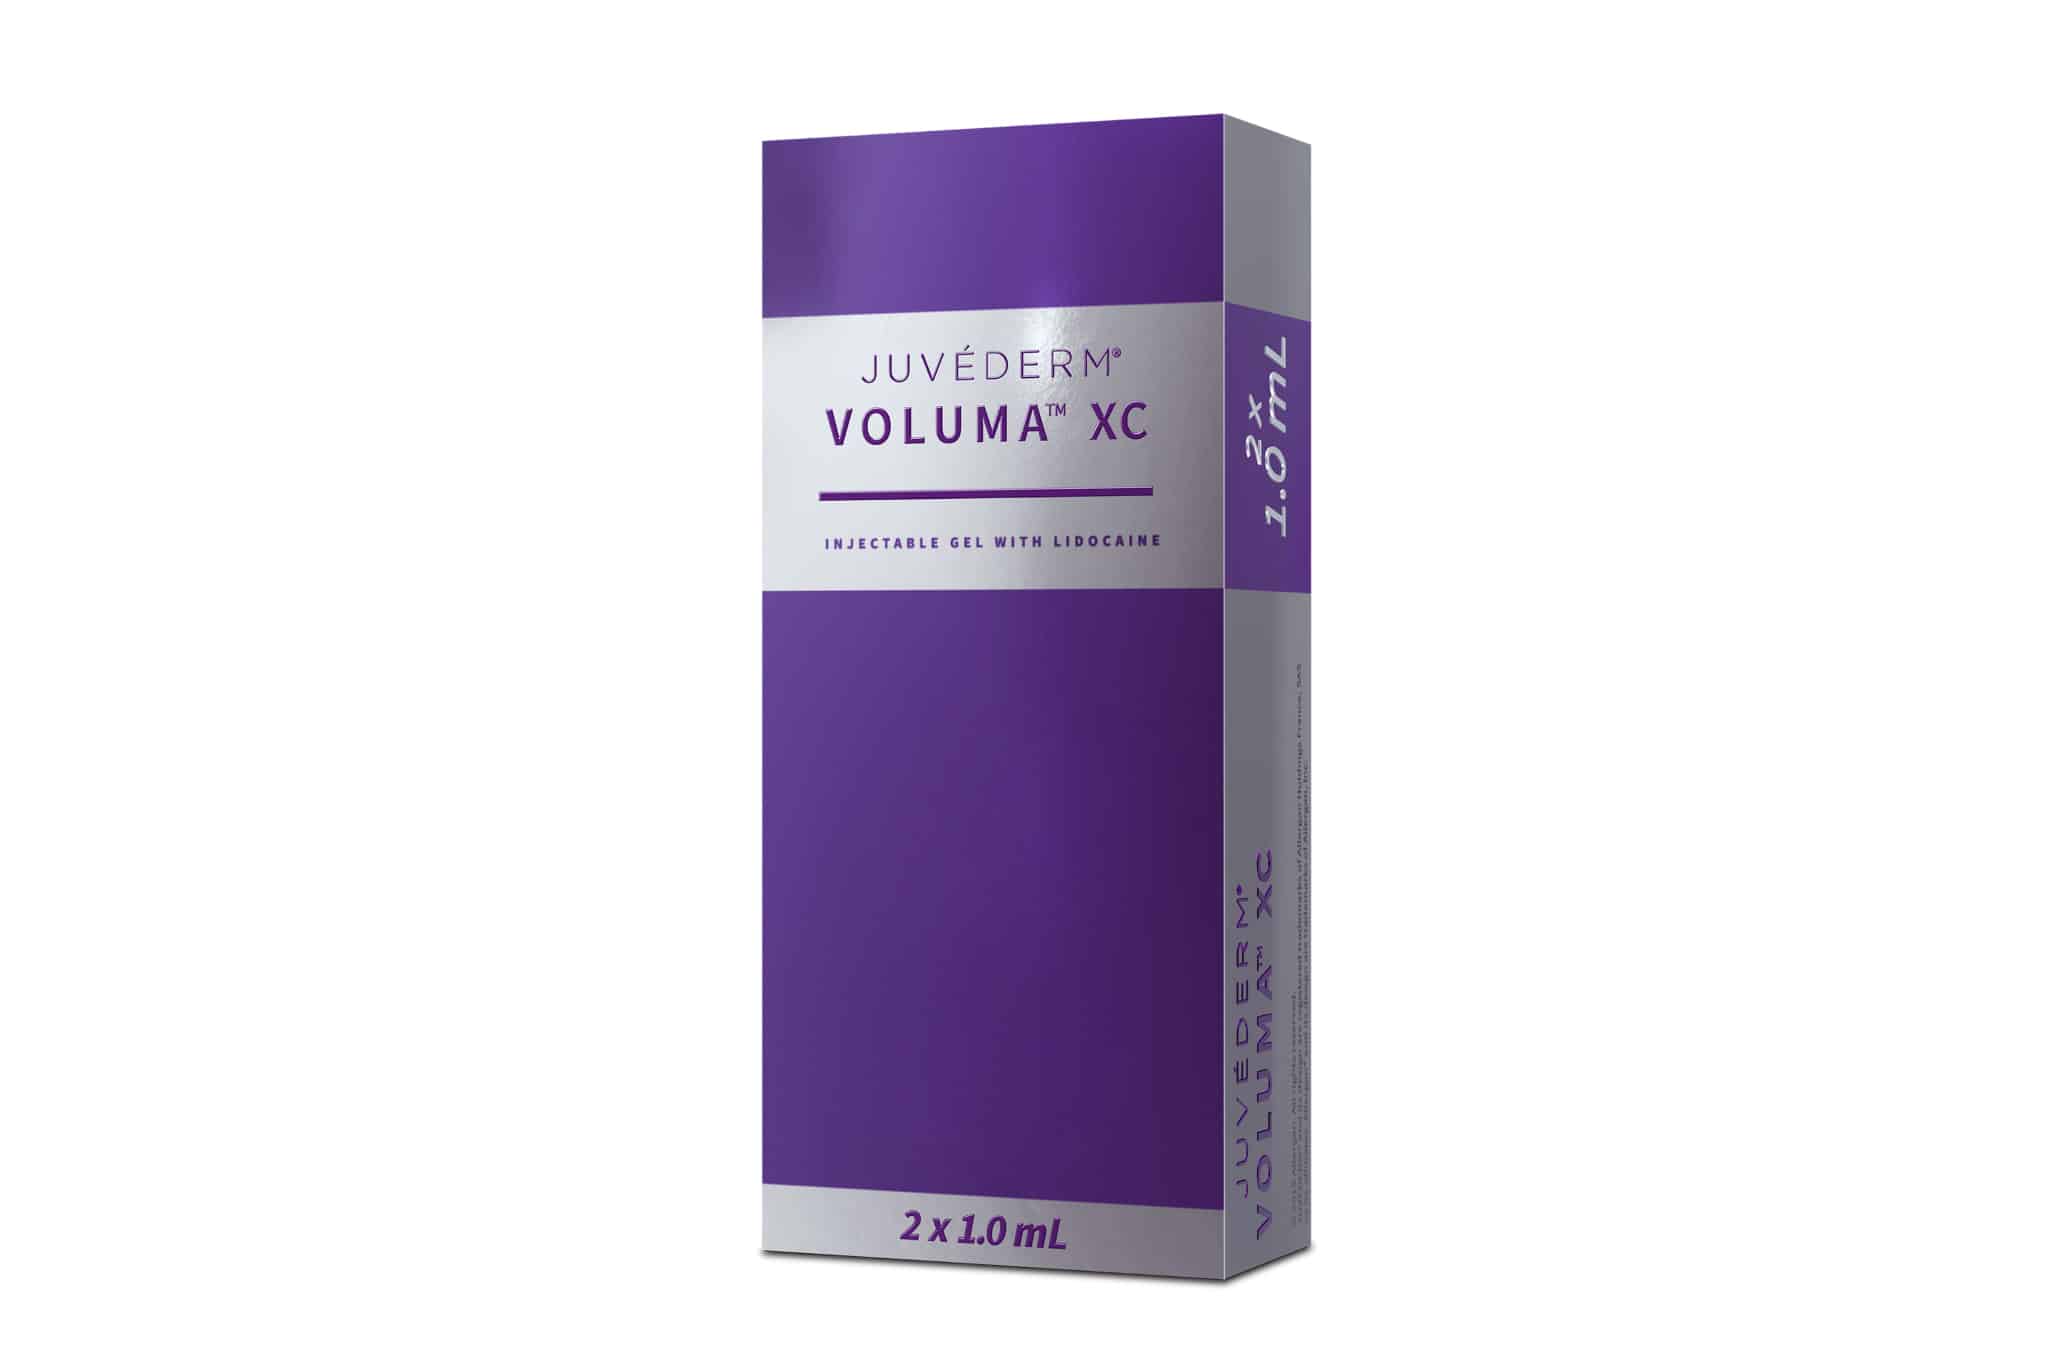 Juvederm Voluma Xc Packaging Updated